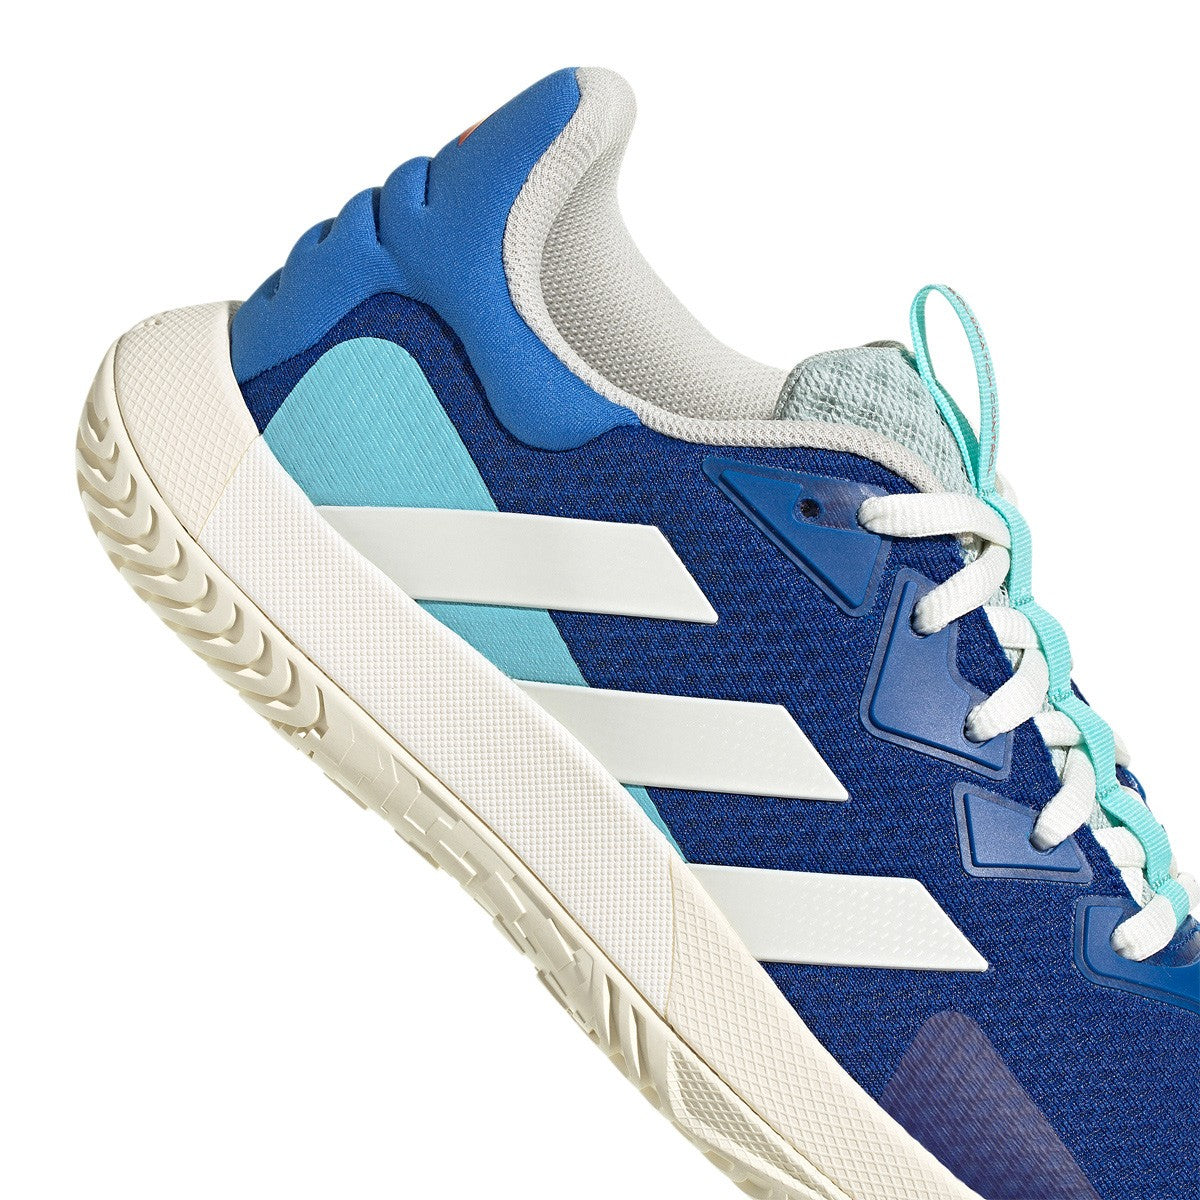 Adidas SoleMatch Control Blue Men Shoes